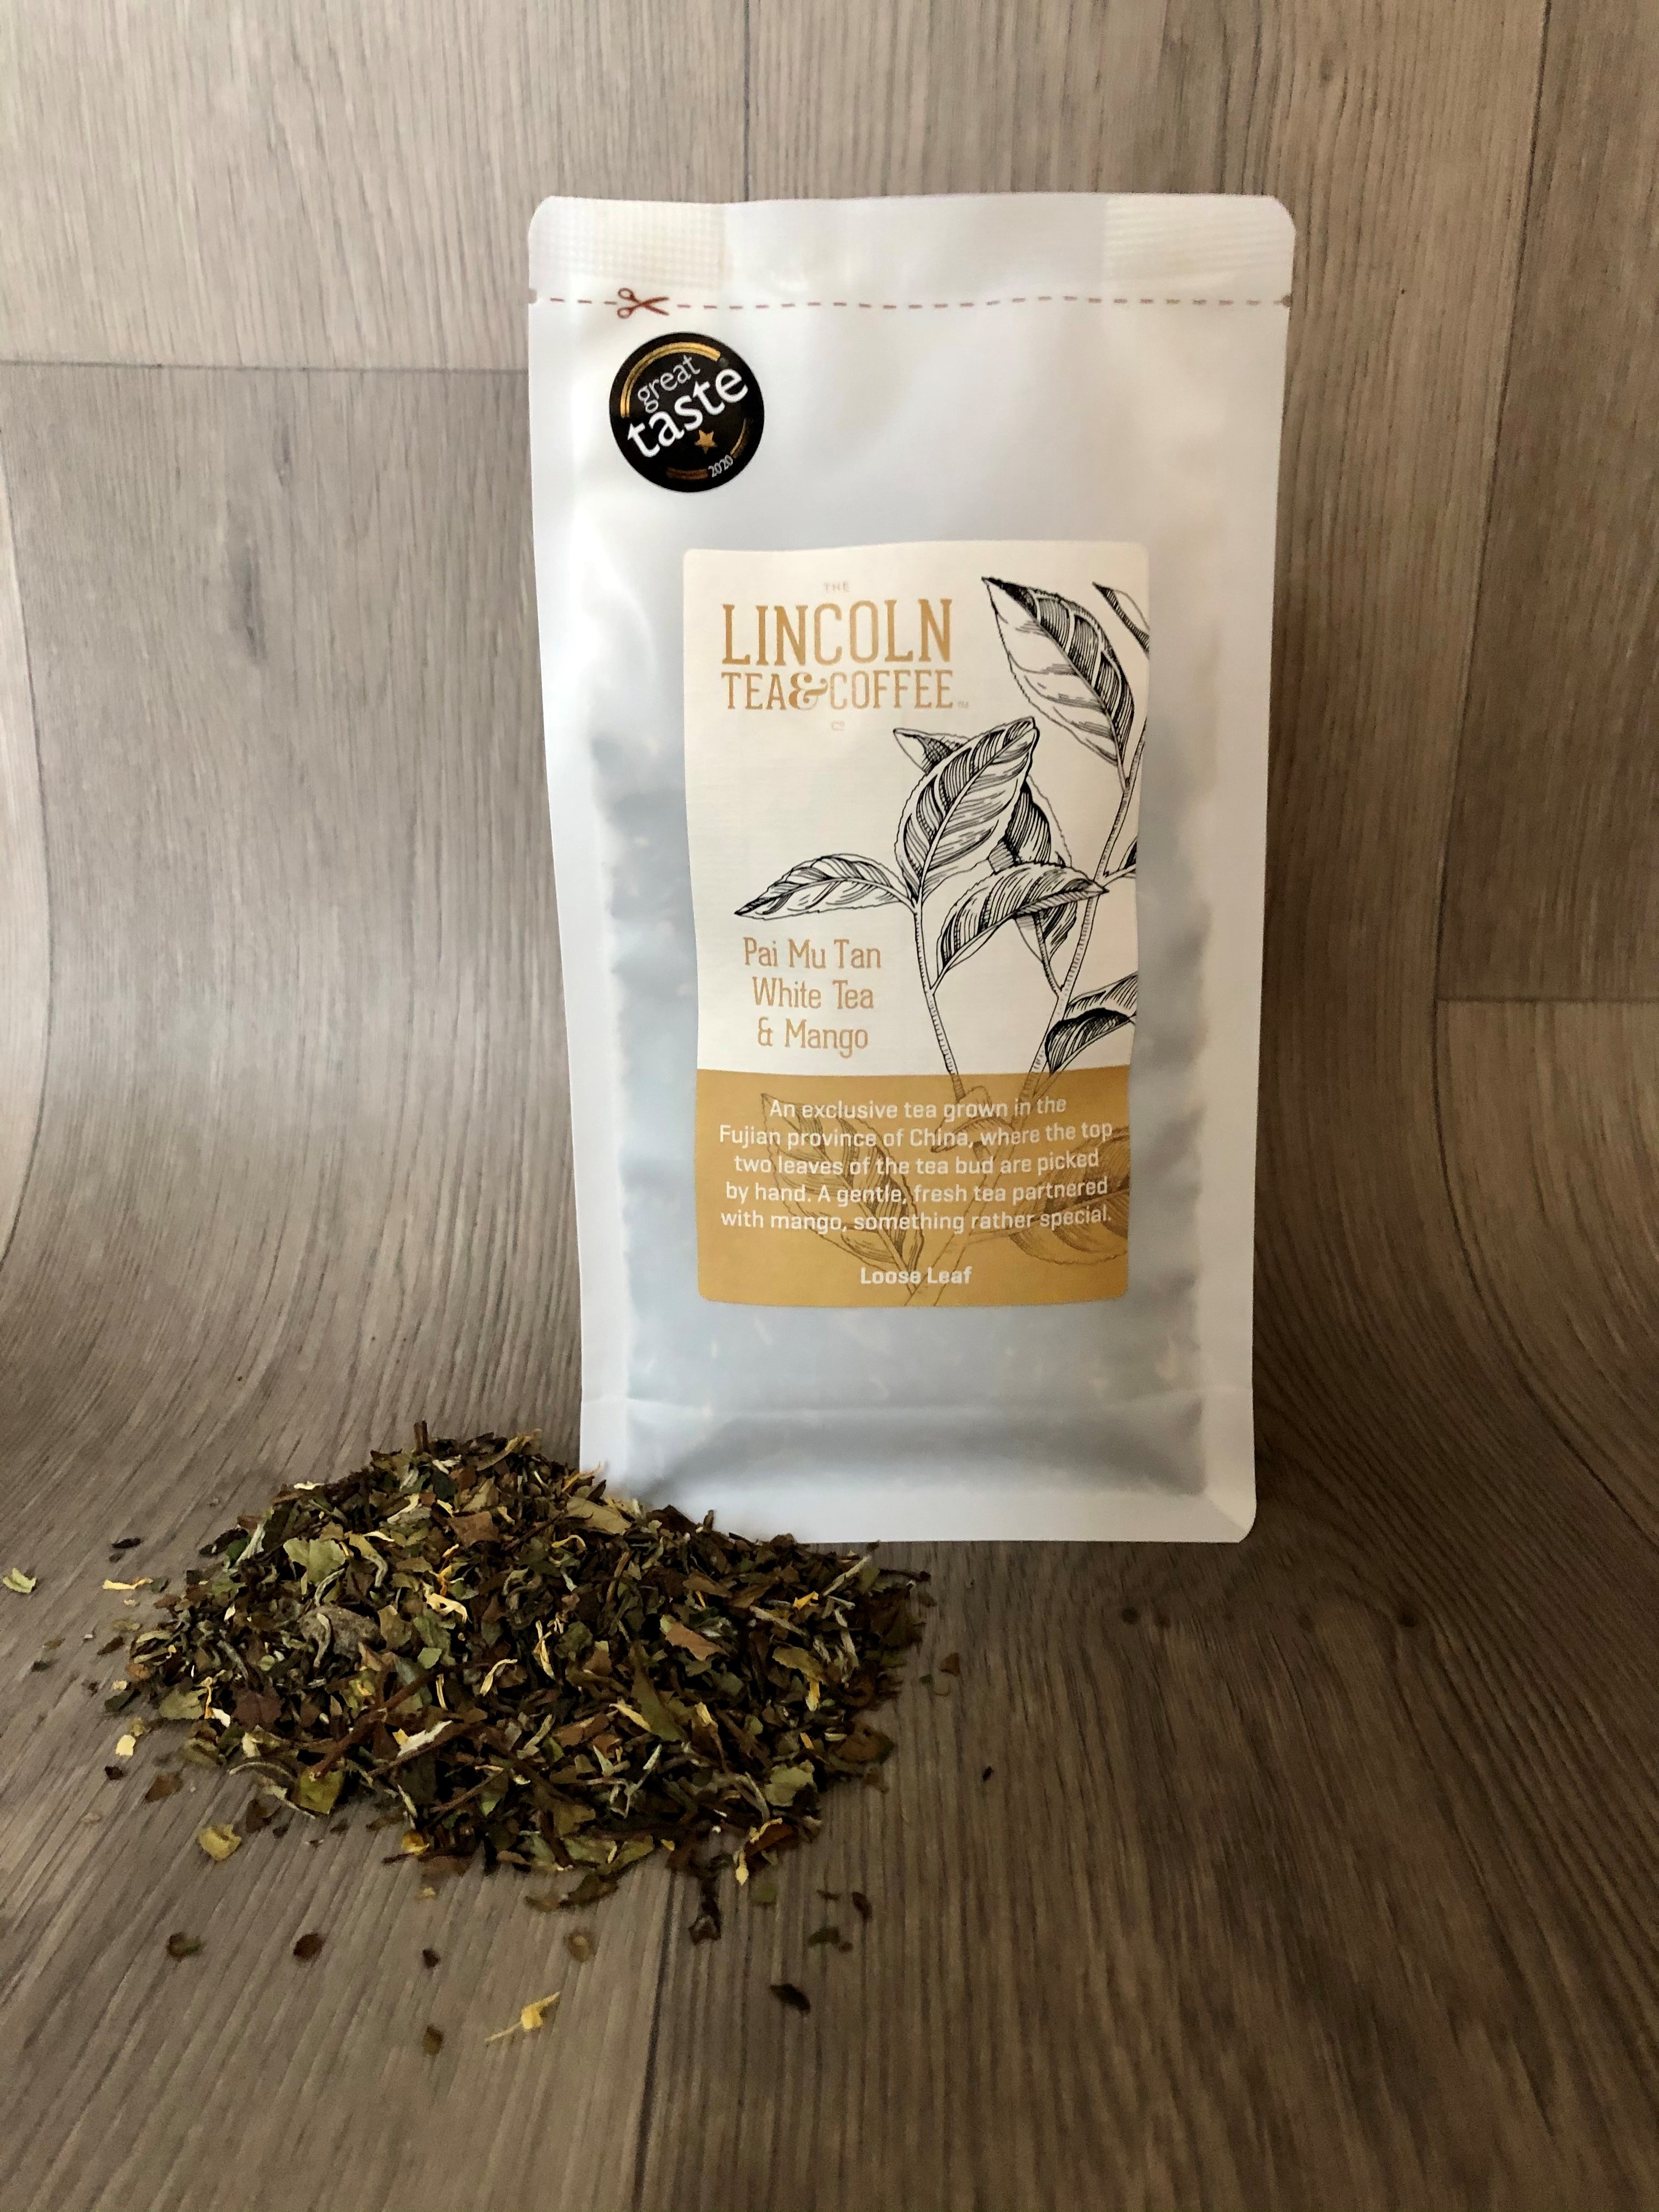 The Lincoln Tea & Coffee Company Pai Mu Tan White Tea & Mango